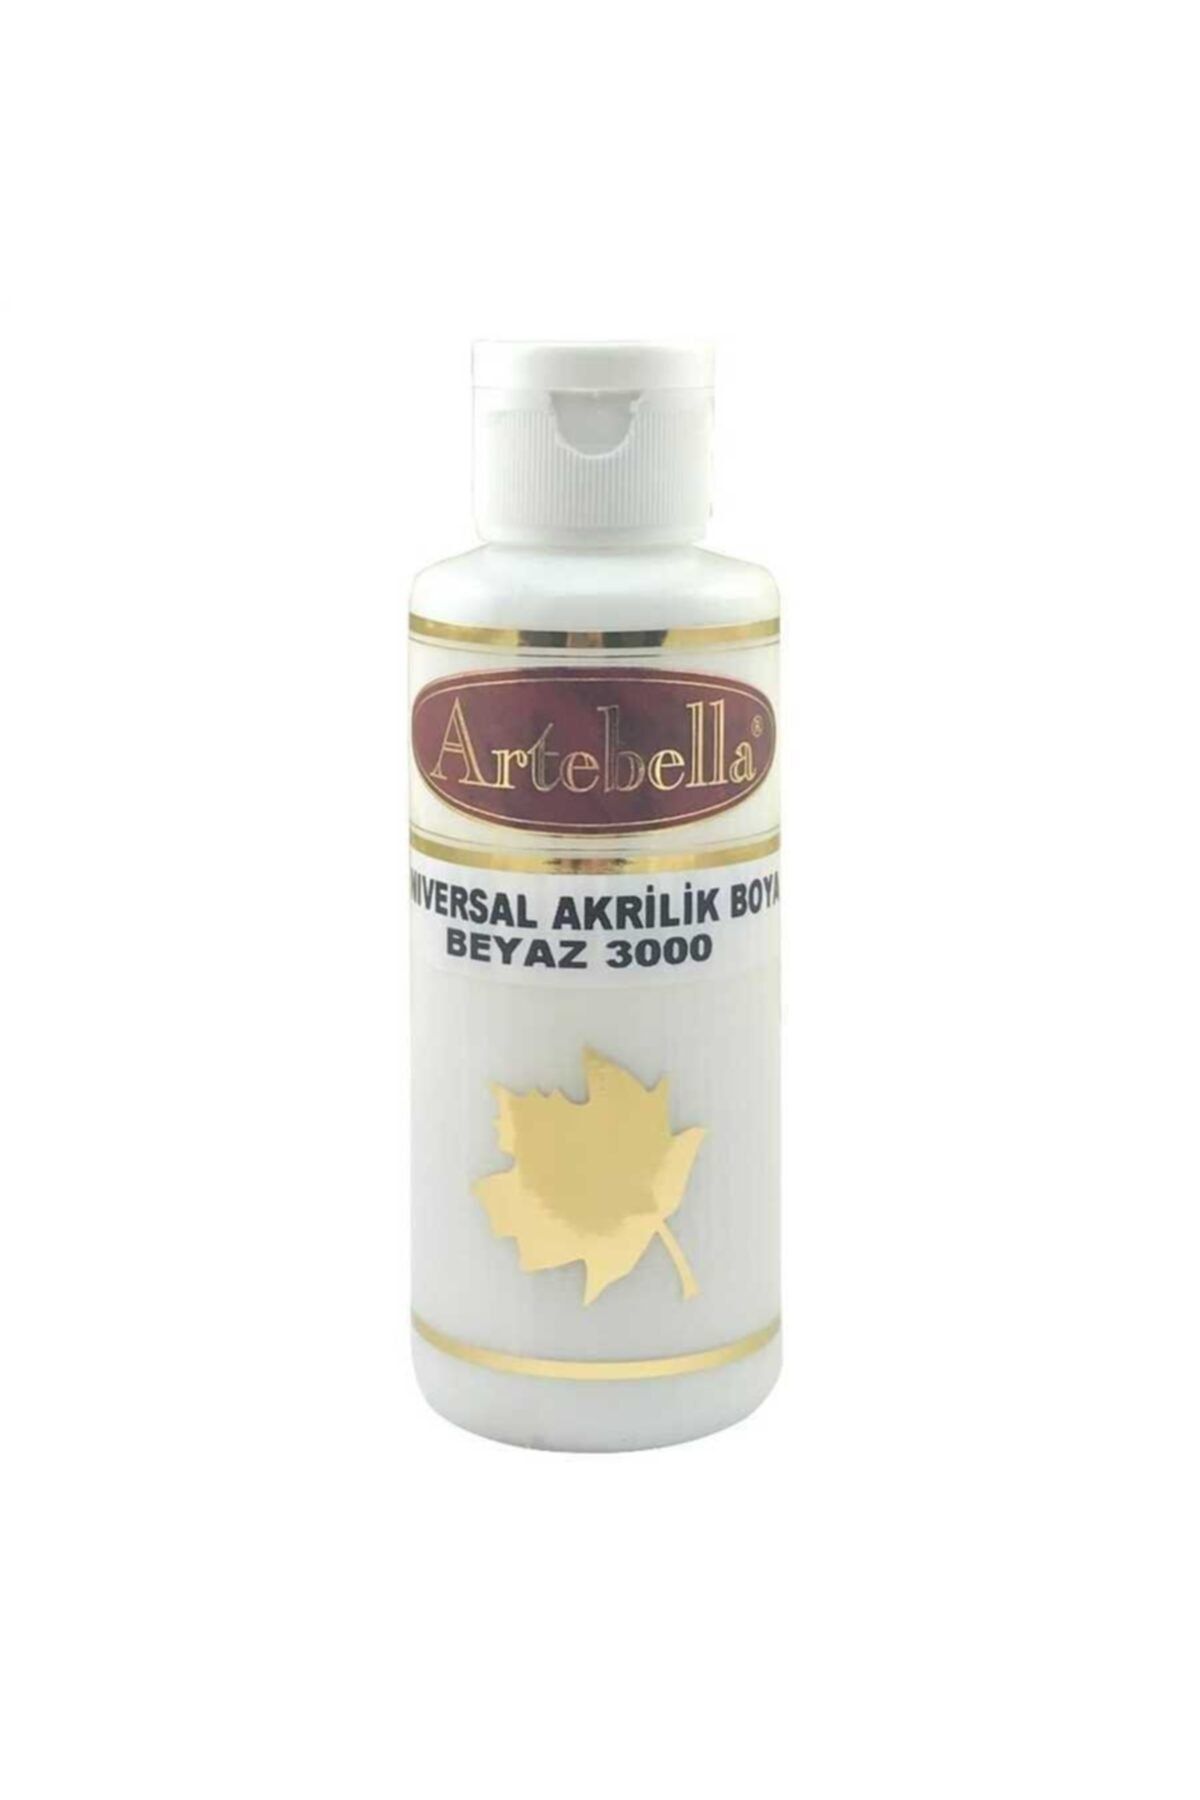 Artebella 30000130 Akrilik Boya 130cc Beyaz